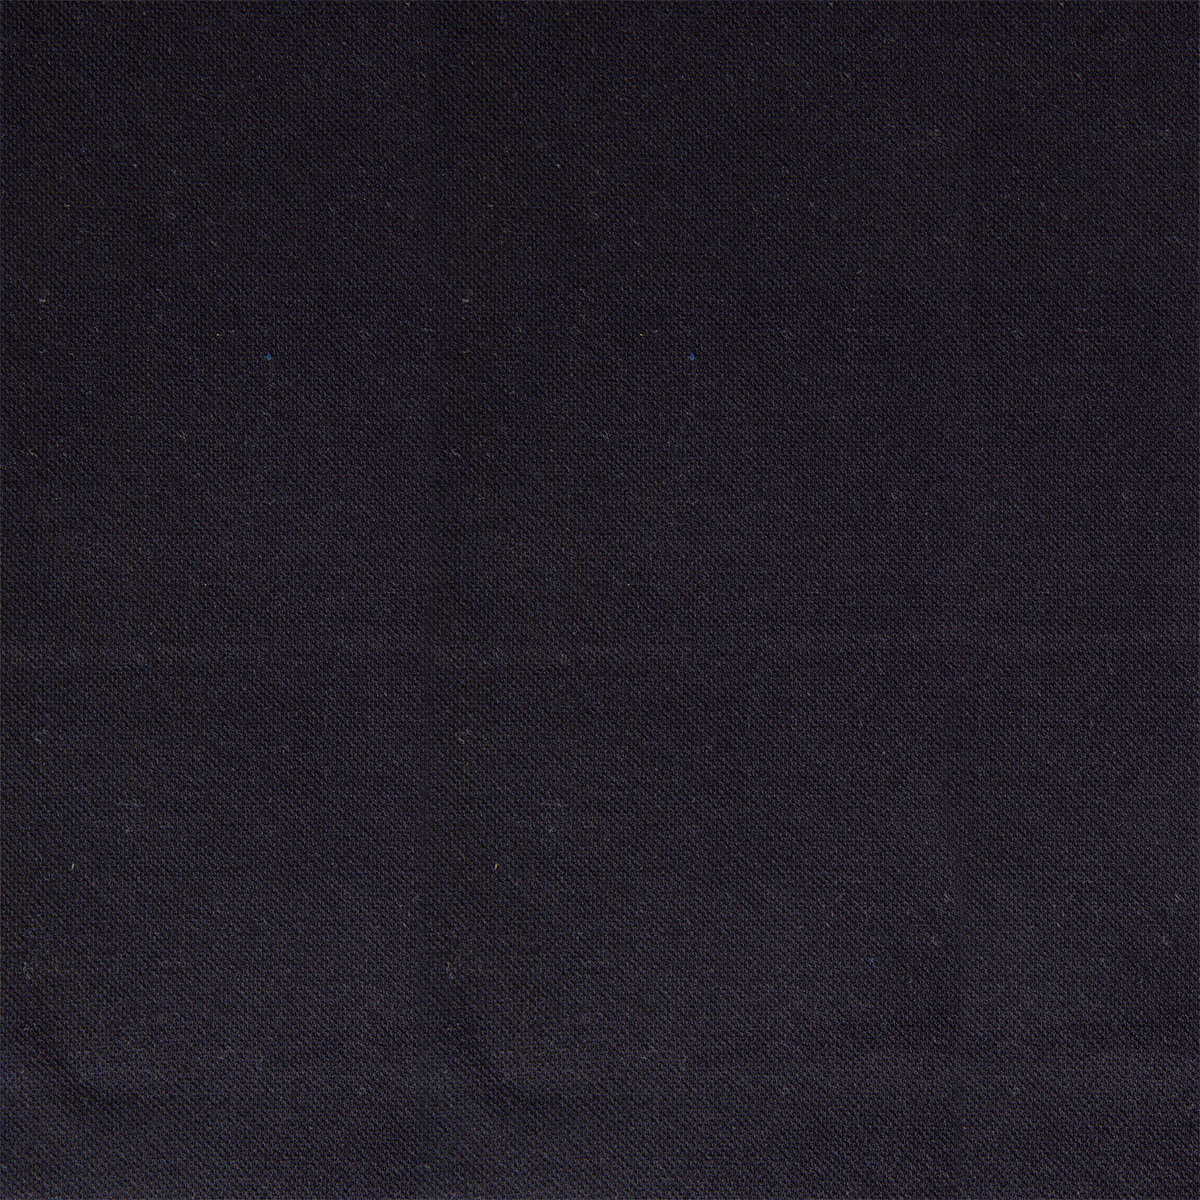 Dekostoff Polo Uni schwarz in 1,6m Breite (METERWARE) Baumwollstoff Stoff aus 100% Baumwolle